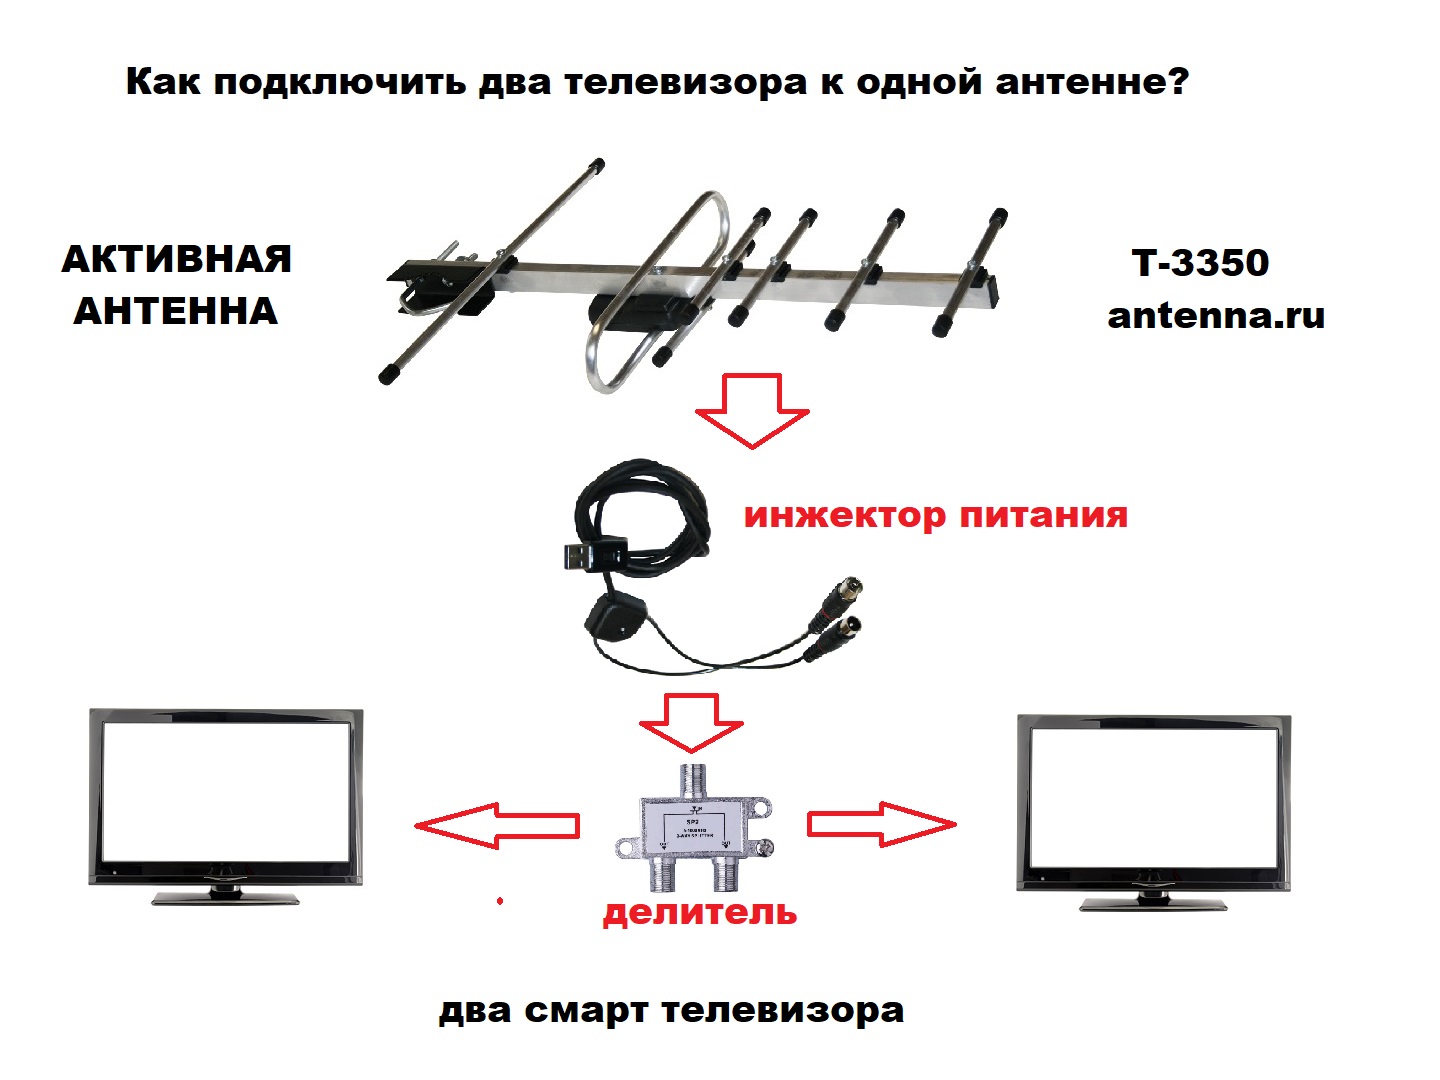 Как подключить два-три СОВРЕМЕННЫХ СМАРТ-телевизора к одной активной антенне